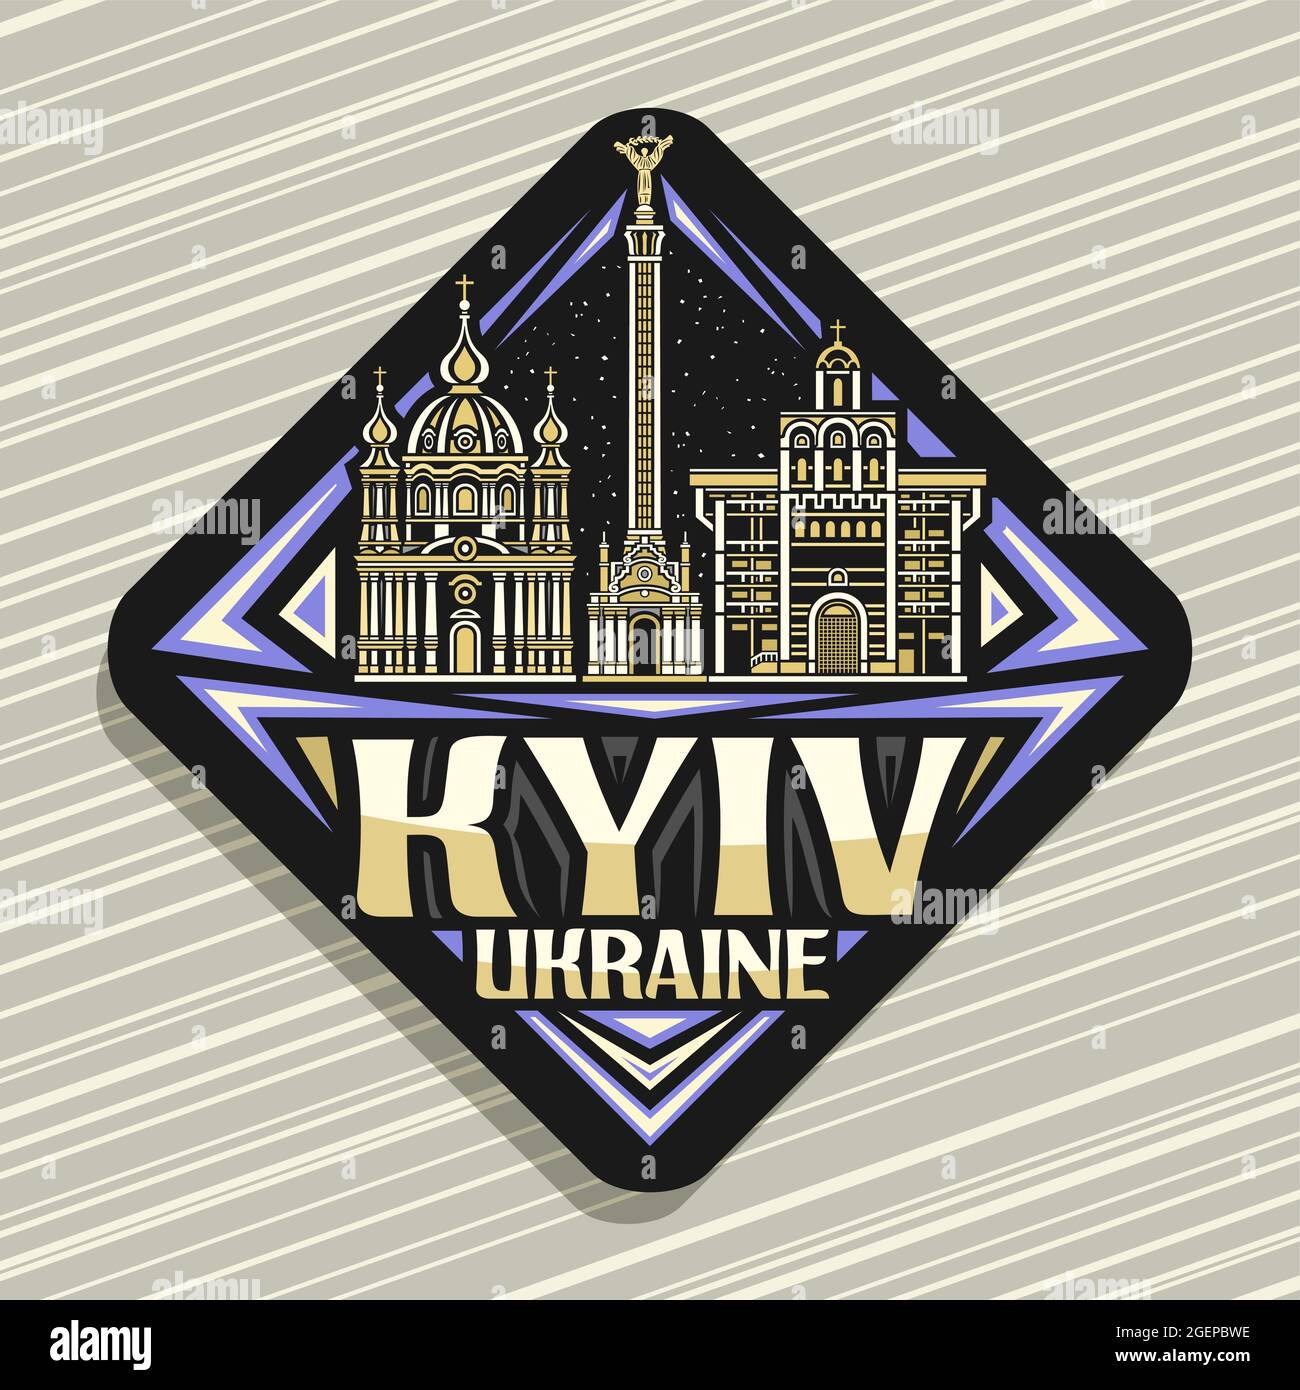 Vektor-Logo für Kiew, schwarzes Rhombus-Straßenschild mit Umriss-Illustration des berühmten kiewer Stadtbildes auf Abendhimmel-Hintergrund, dekorativer Kühlschrankmagnet Stock Vektor